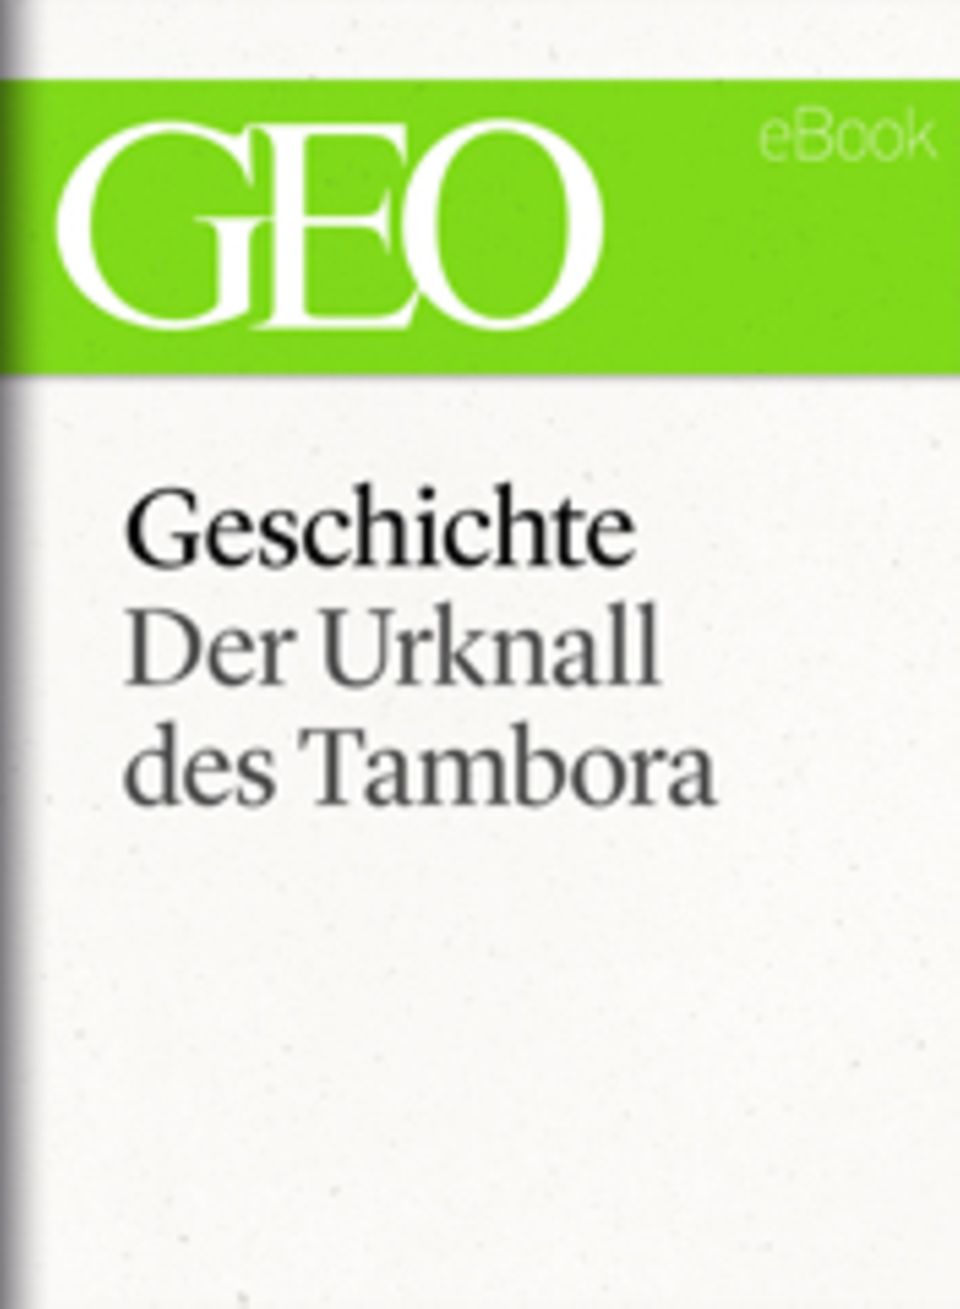 Der Urknall des Tambora: GEO eBook "Geschichte"